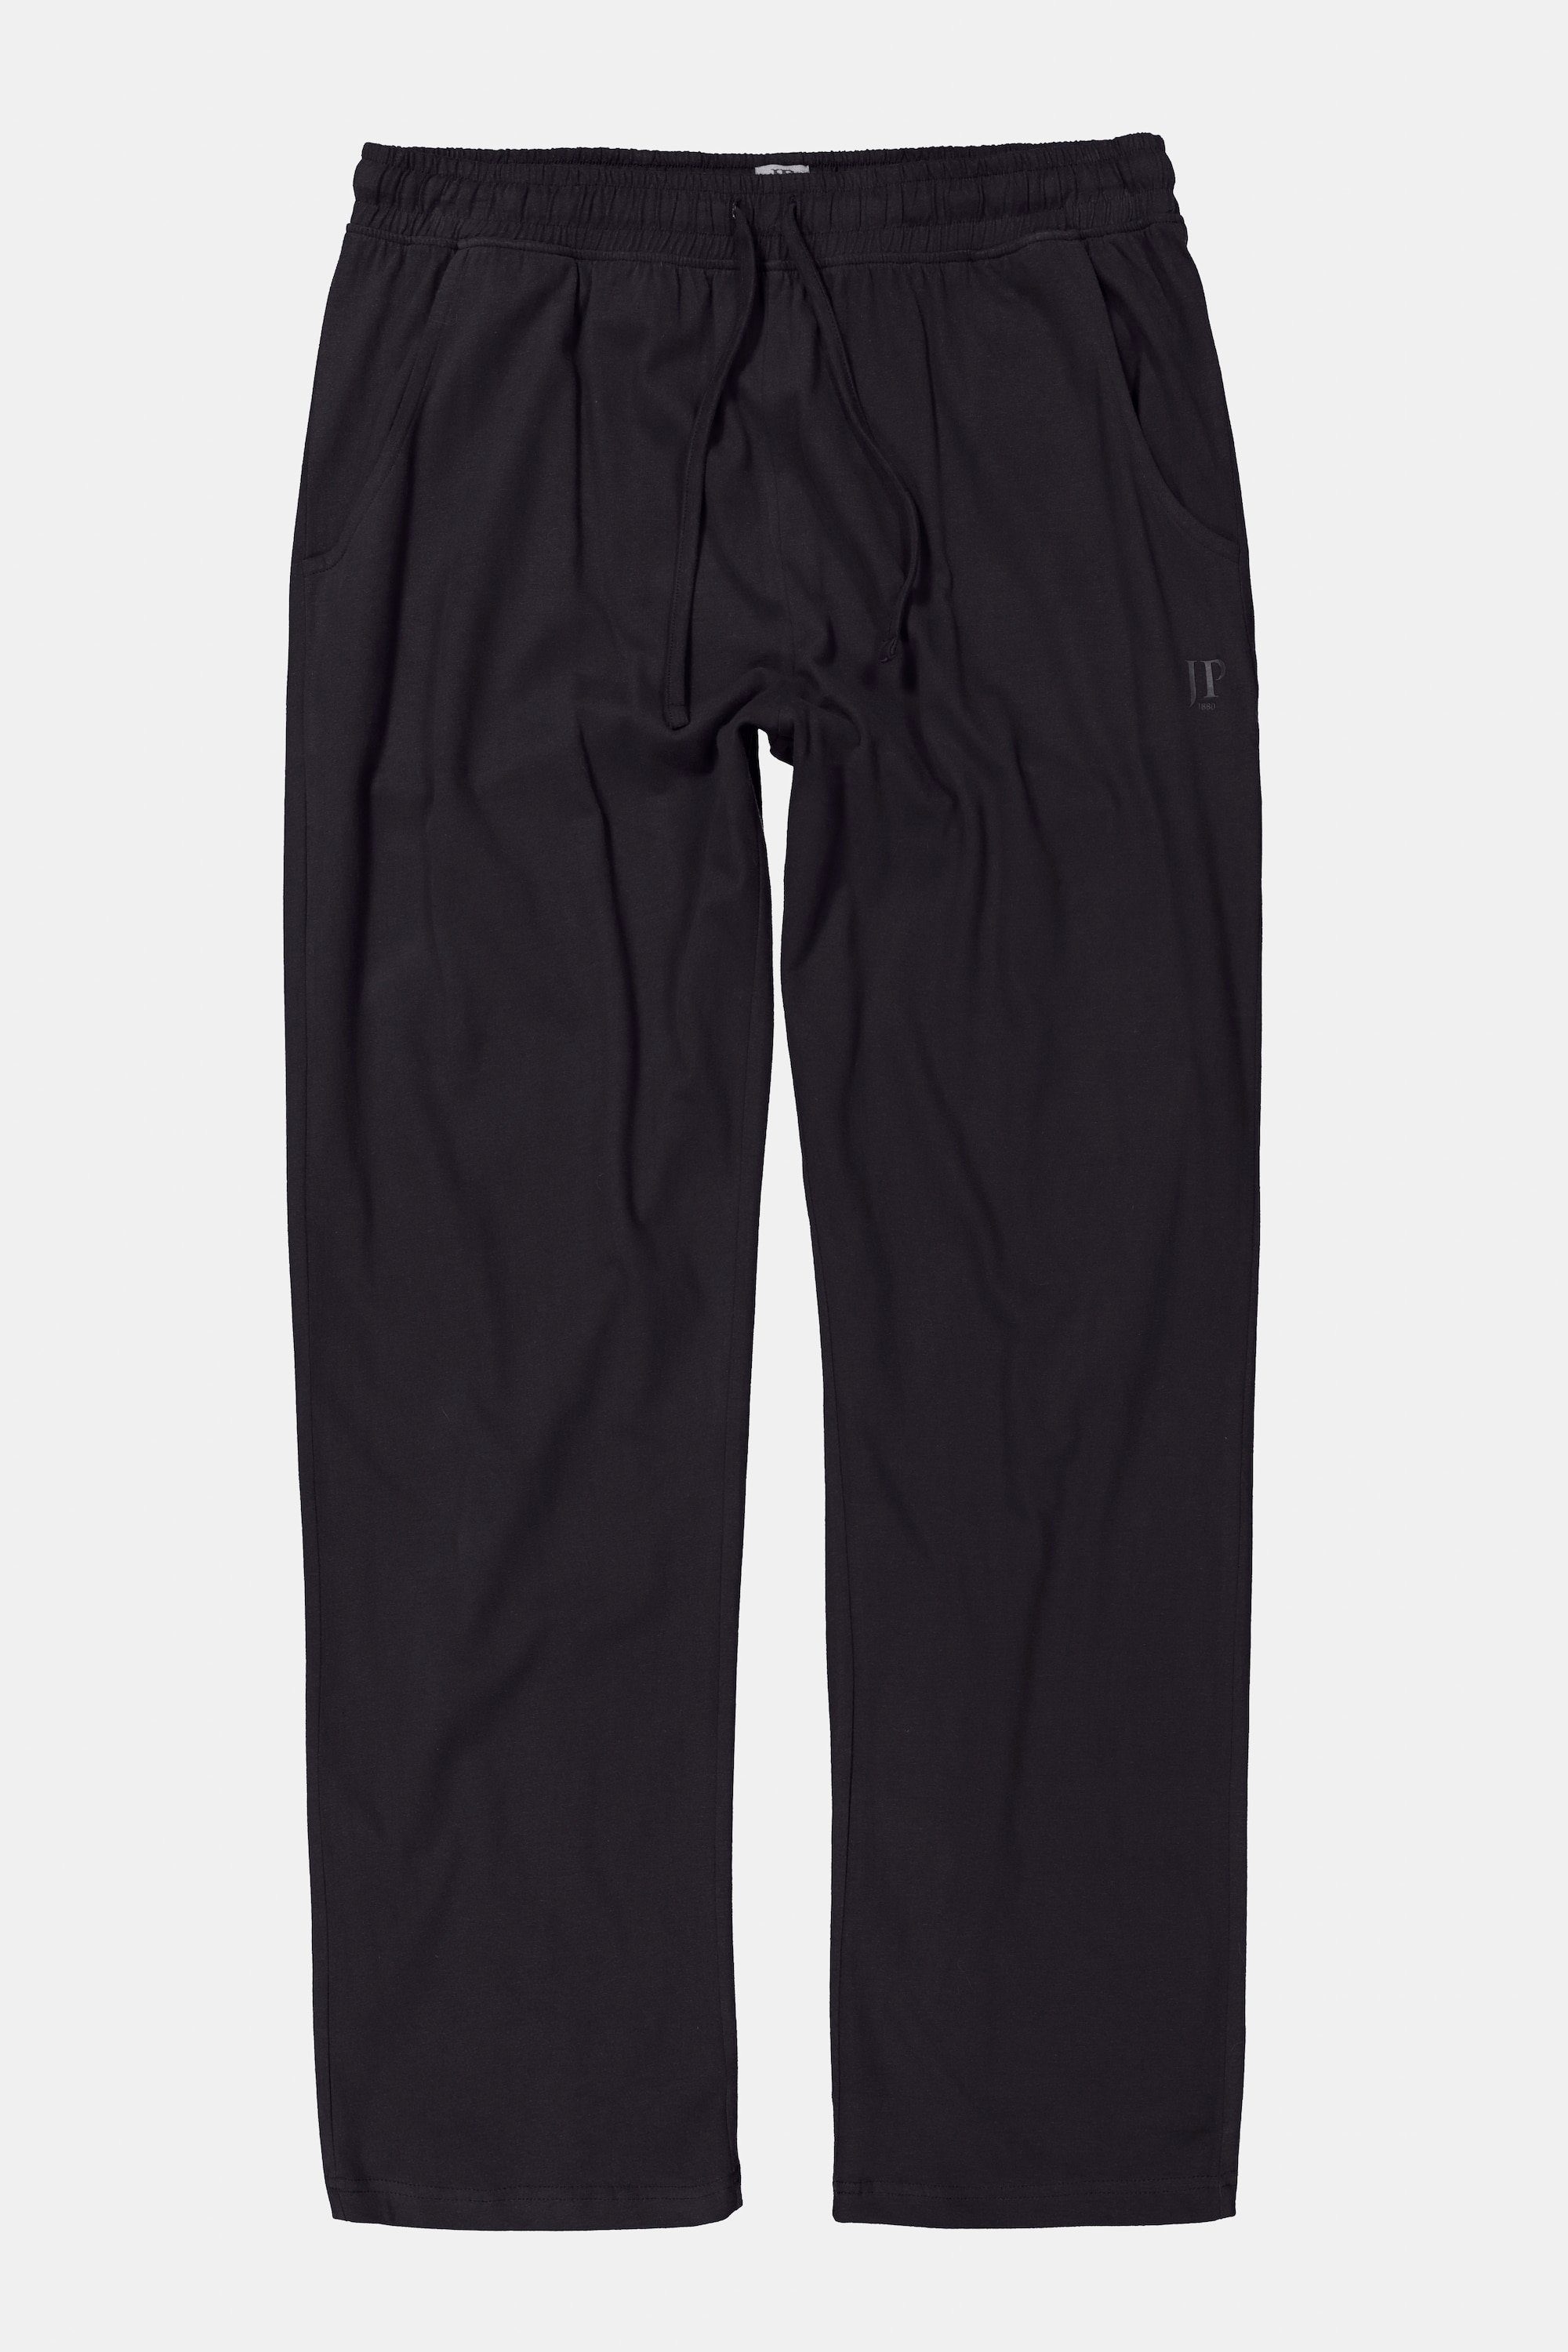 JP1880 Elastikbund Form lange Schlafanzug Schlafanzug-Hose Homewear schwarz